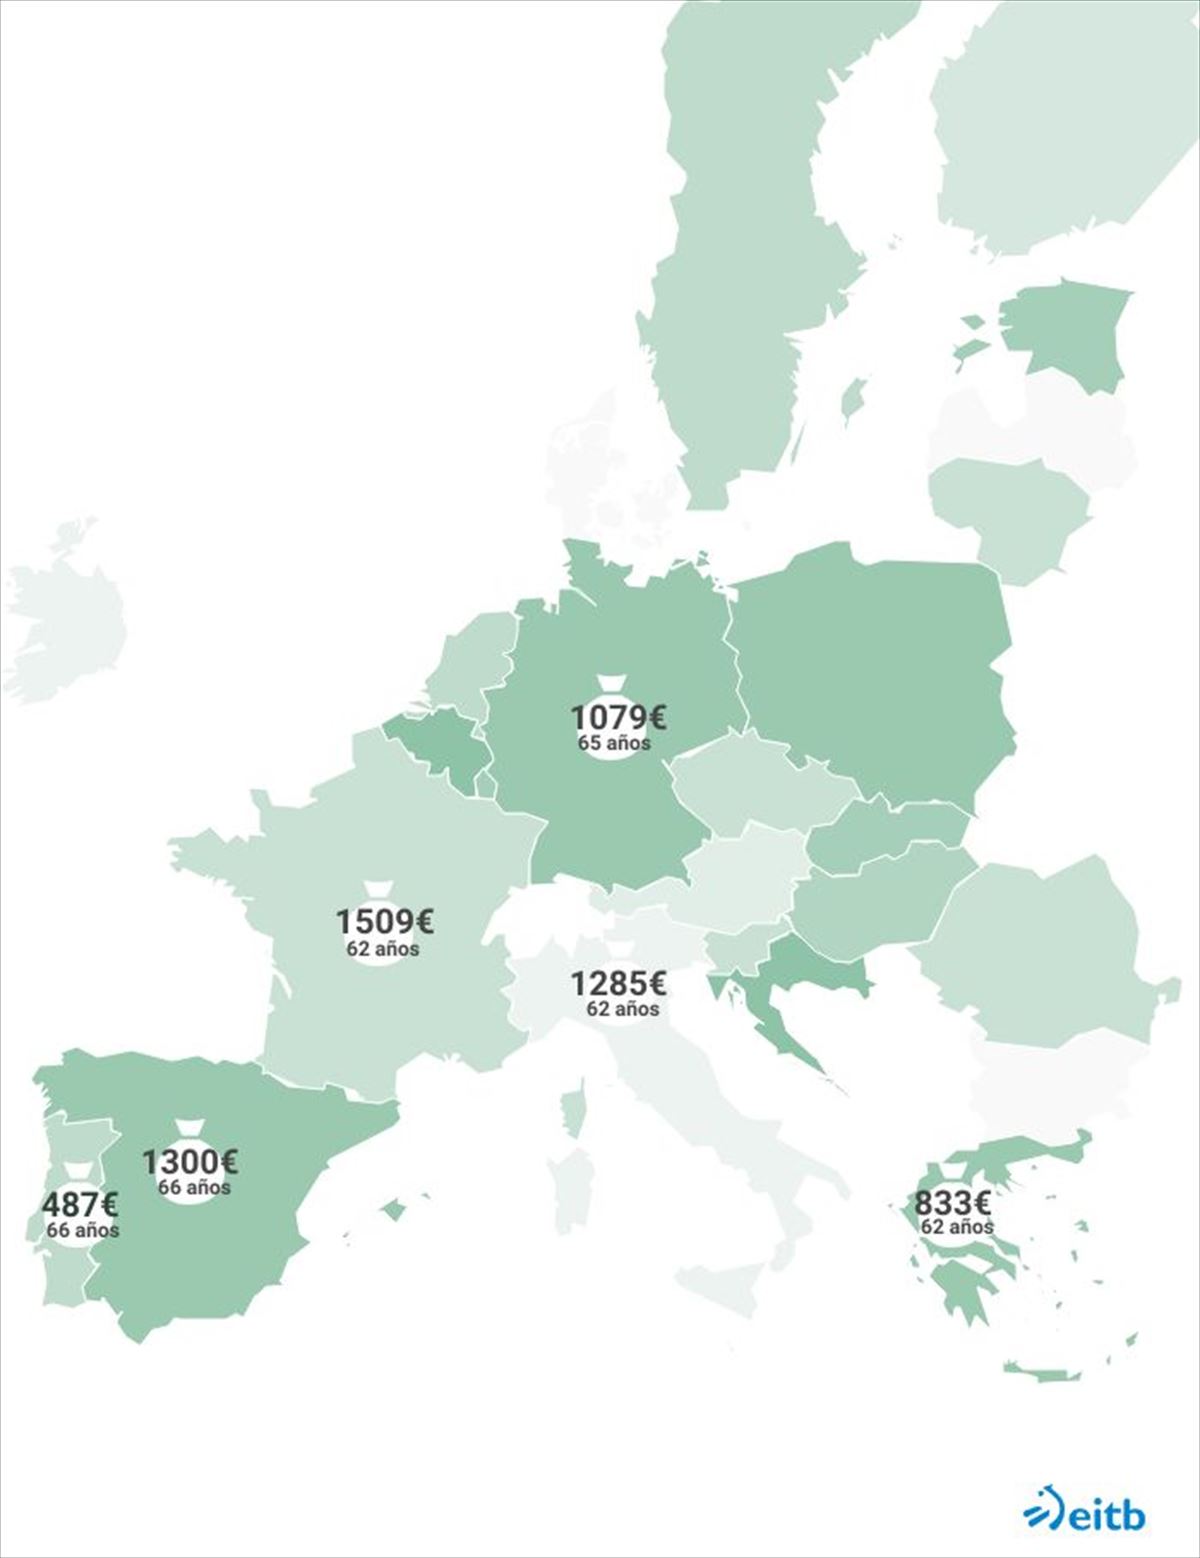 Mapa de la pensión media y la edad de jubilación según el país. Foto: EITB Media